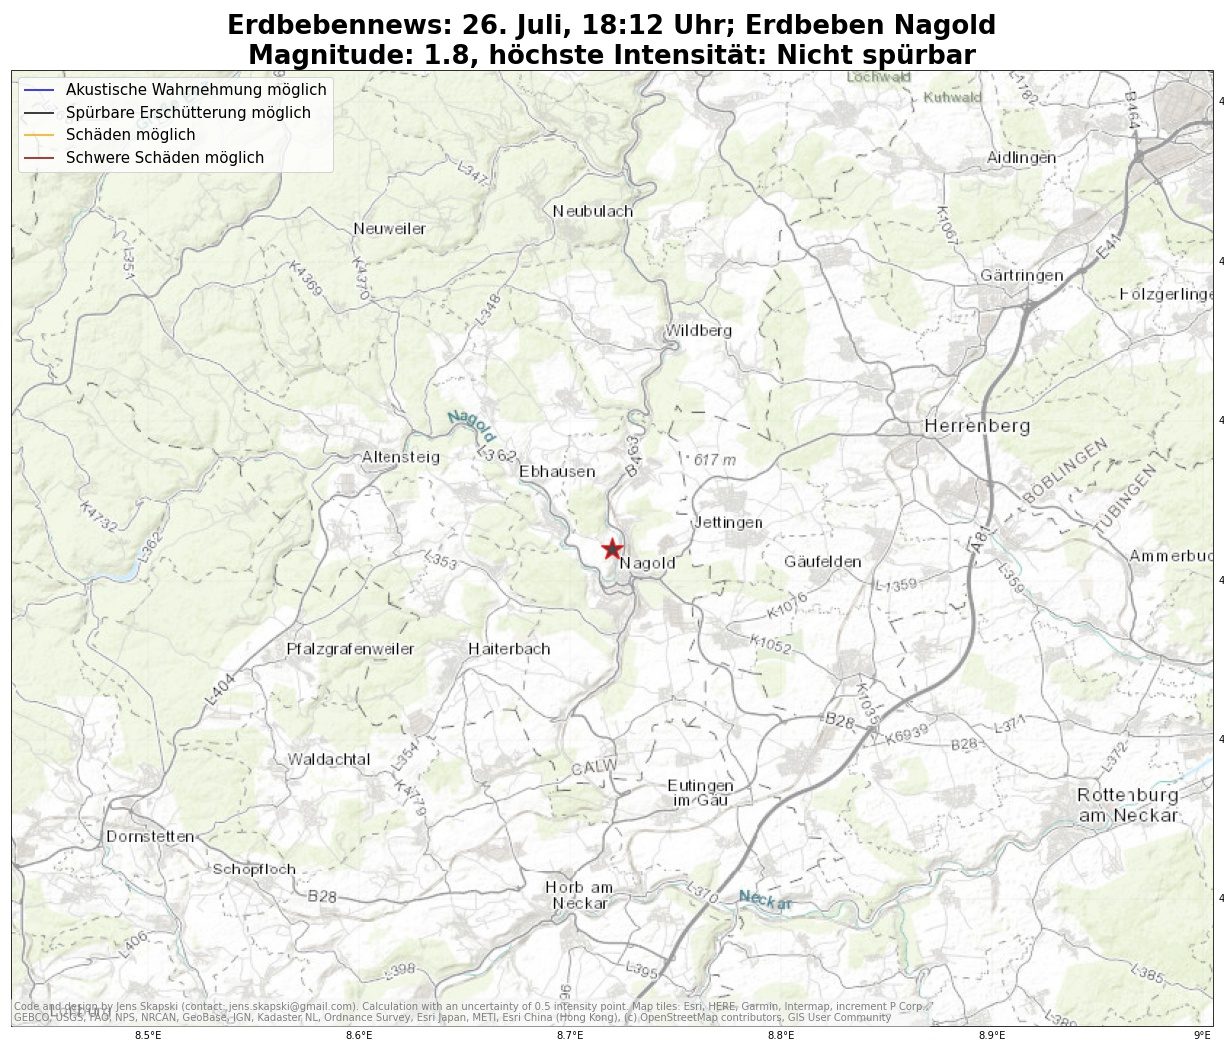 Kleines Erdbeben in Nagold